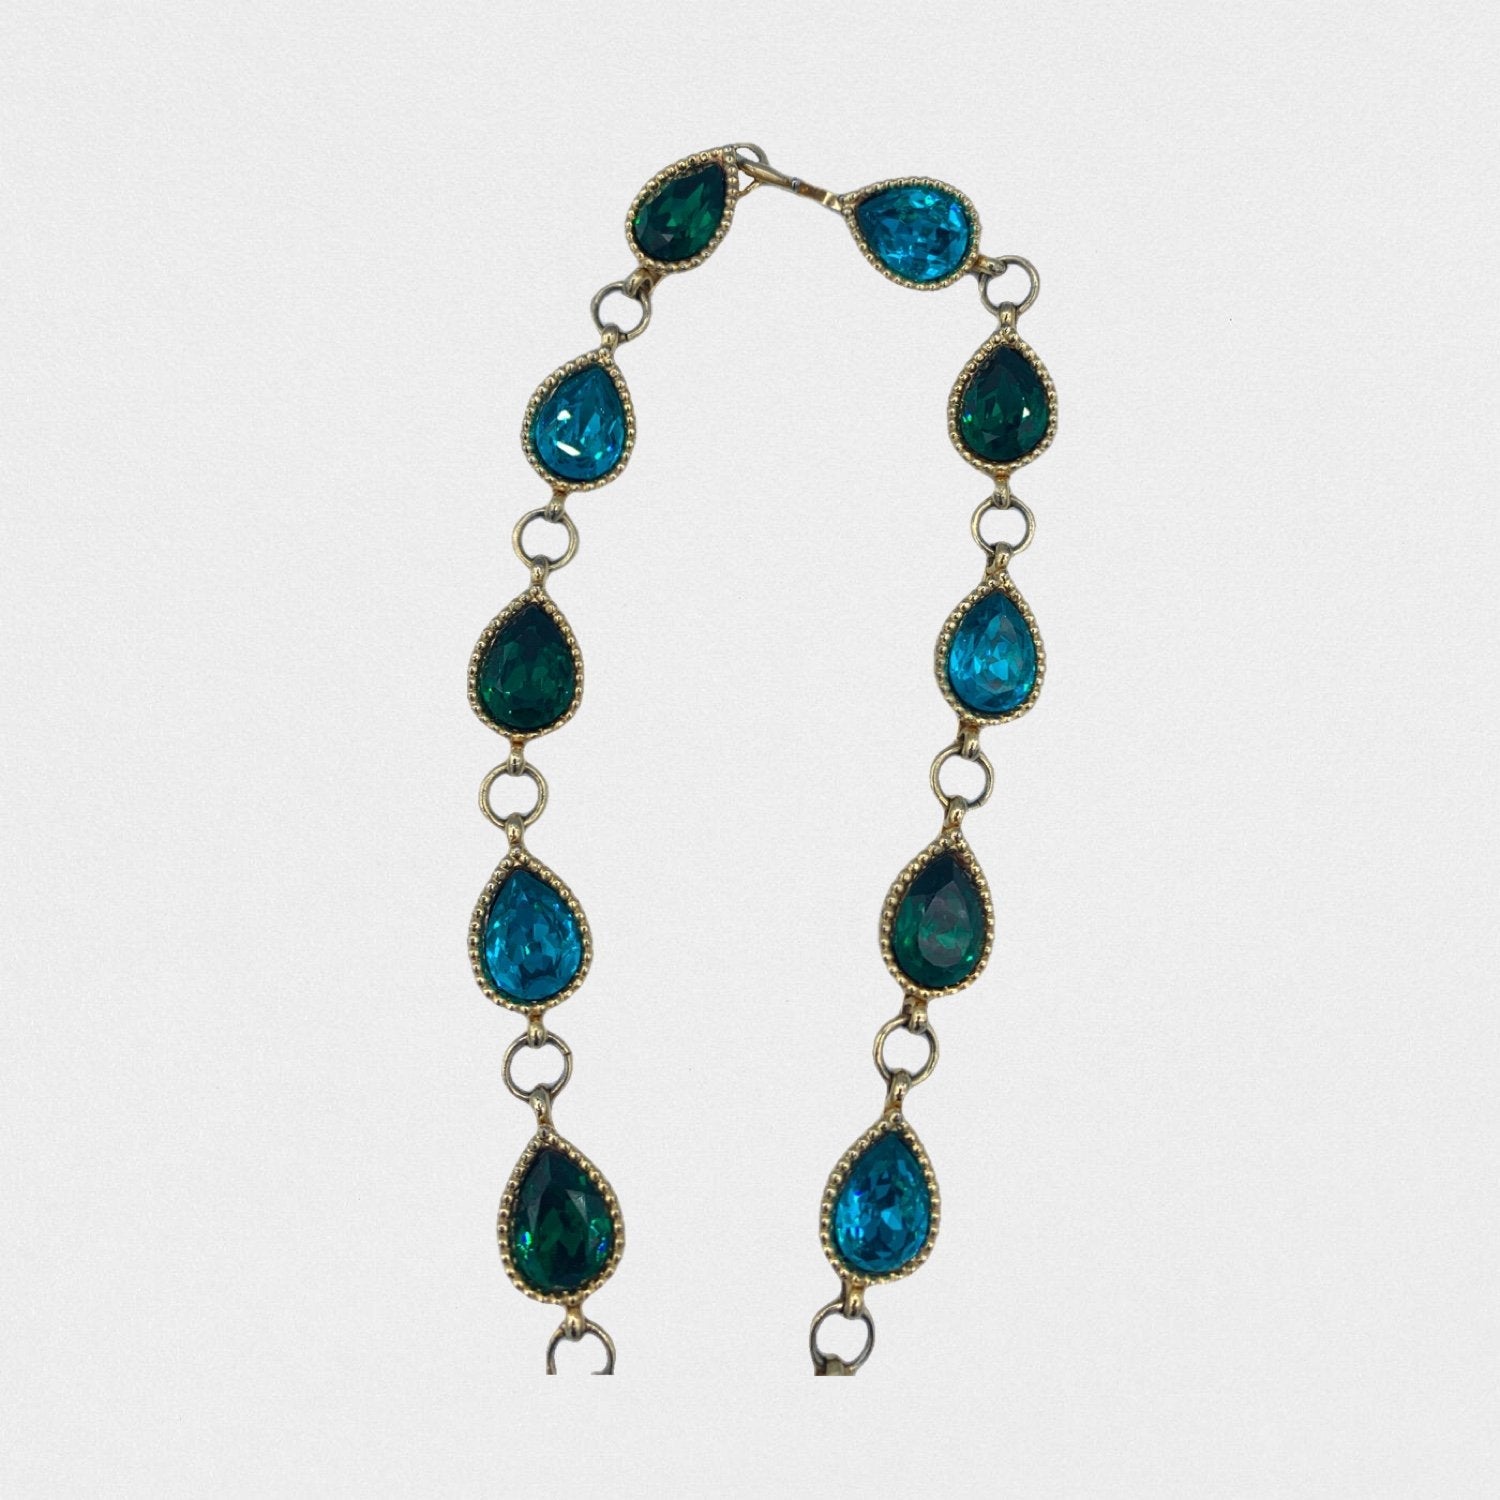 Lysis vintage Yves Saint Laurent necklace - 1990s